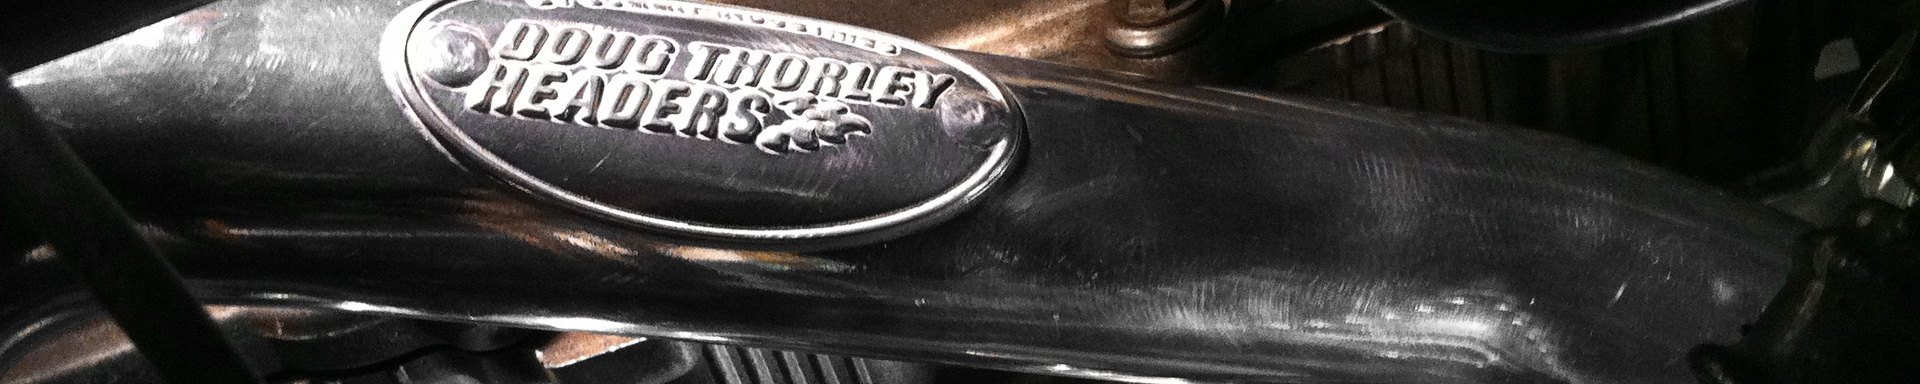 Doug Thorley Headers Turbo & Superchargers